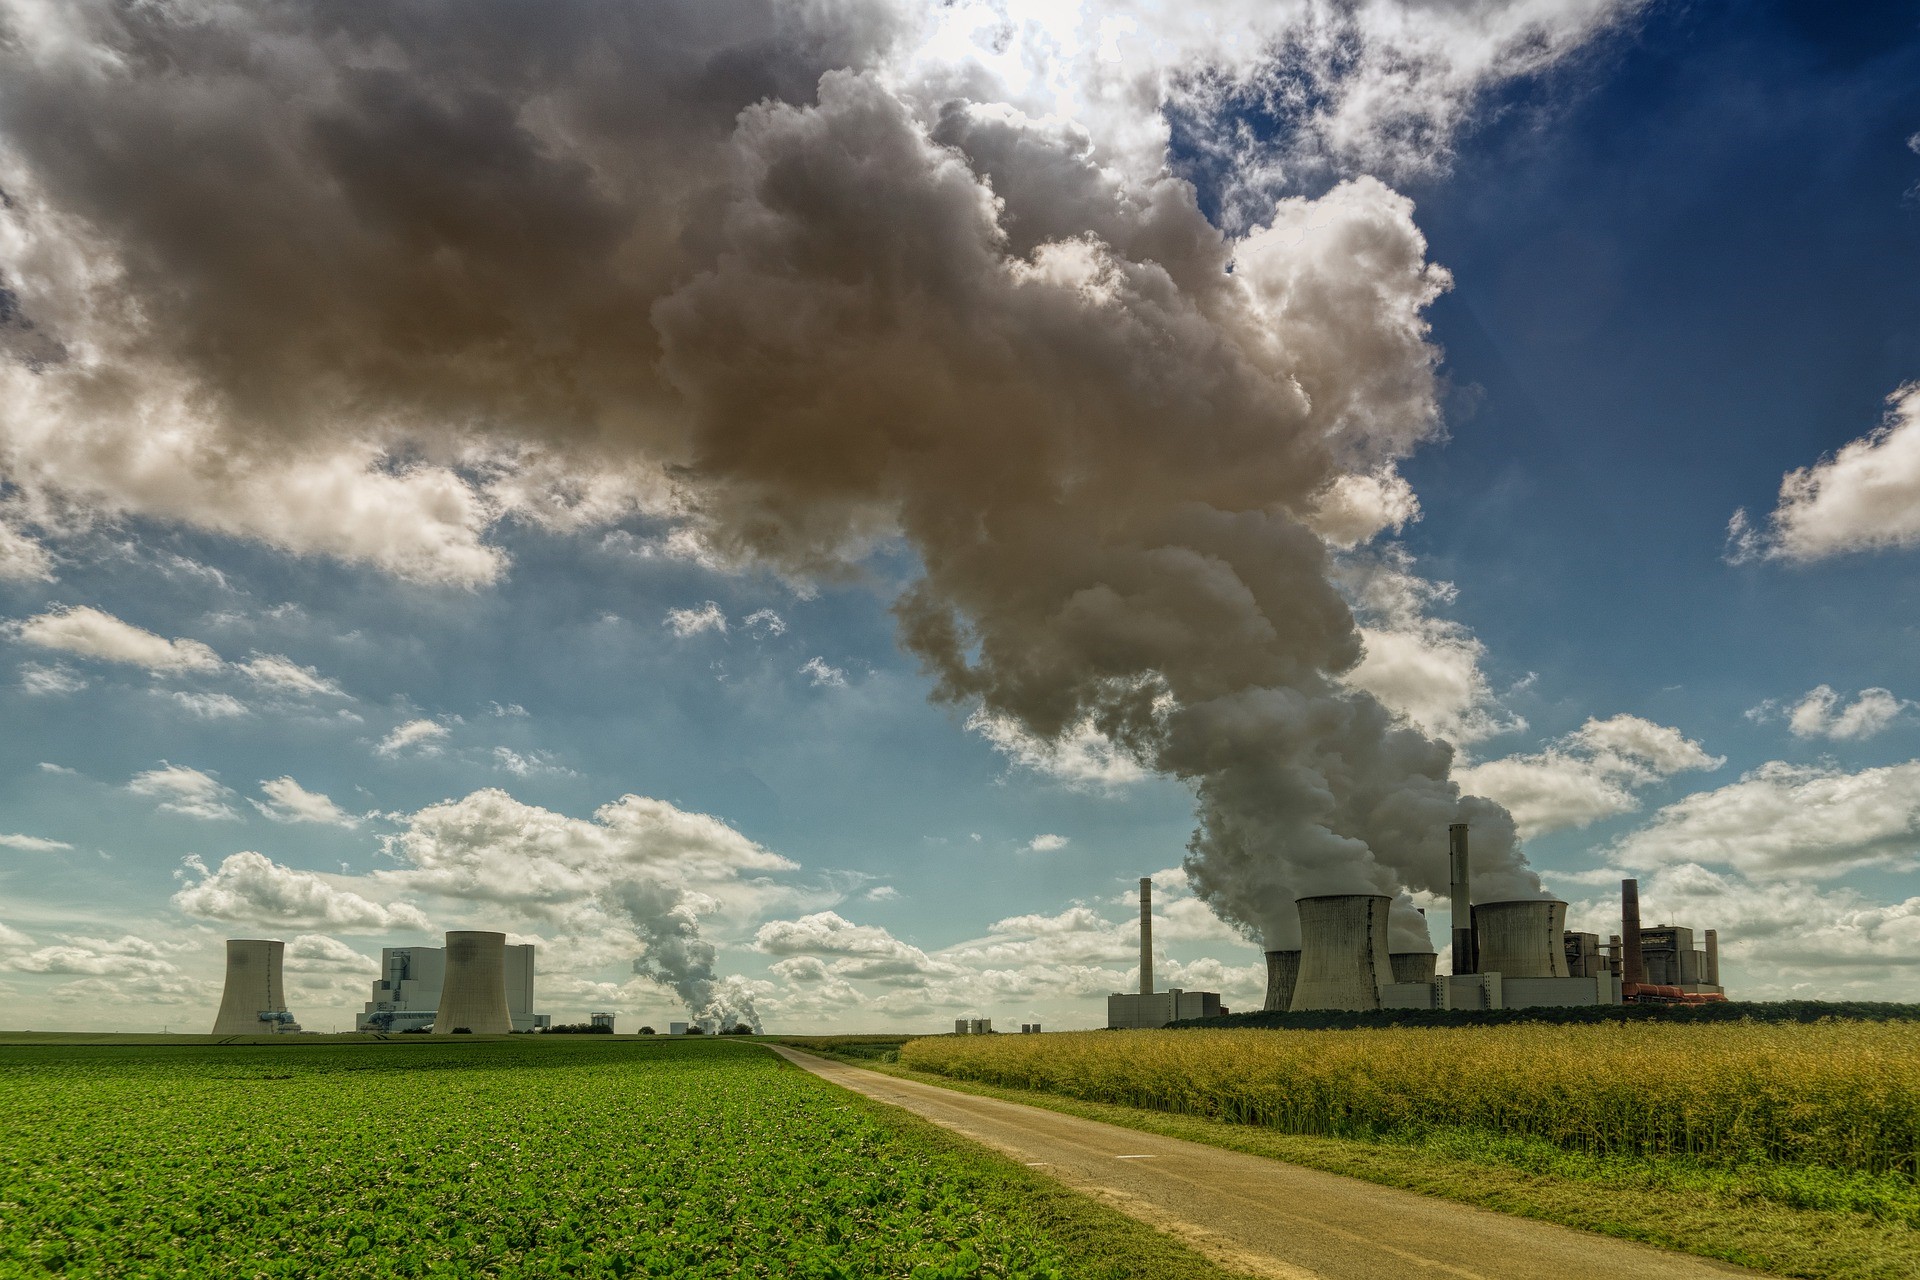 SparkChange Physical Carbon EUA ETC (CO2 ETC) förhindrar utsläpp genom att undanhålla koldioxidutsläpp från förorenare. Detta innebär att investerare kan uppnå både miljöpåverkan och potentiell avkastning - tillsammans på samma gång." Elliot Waxman, VD för SparkChange